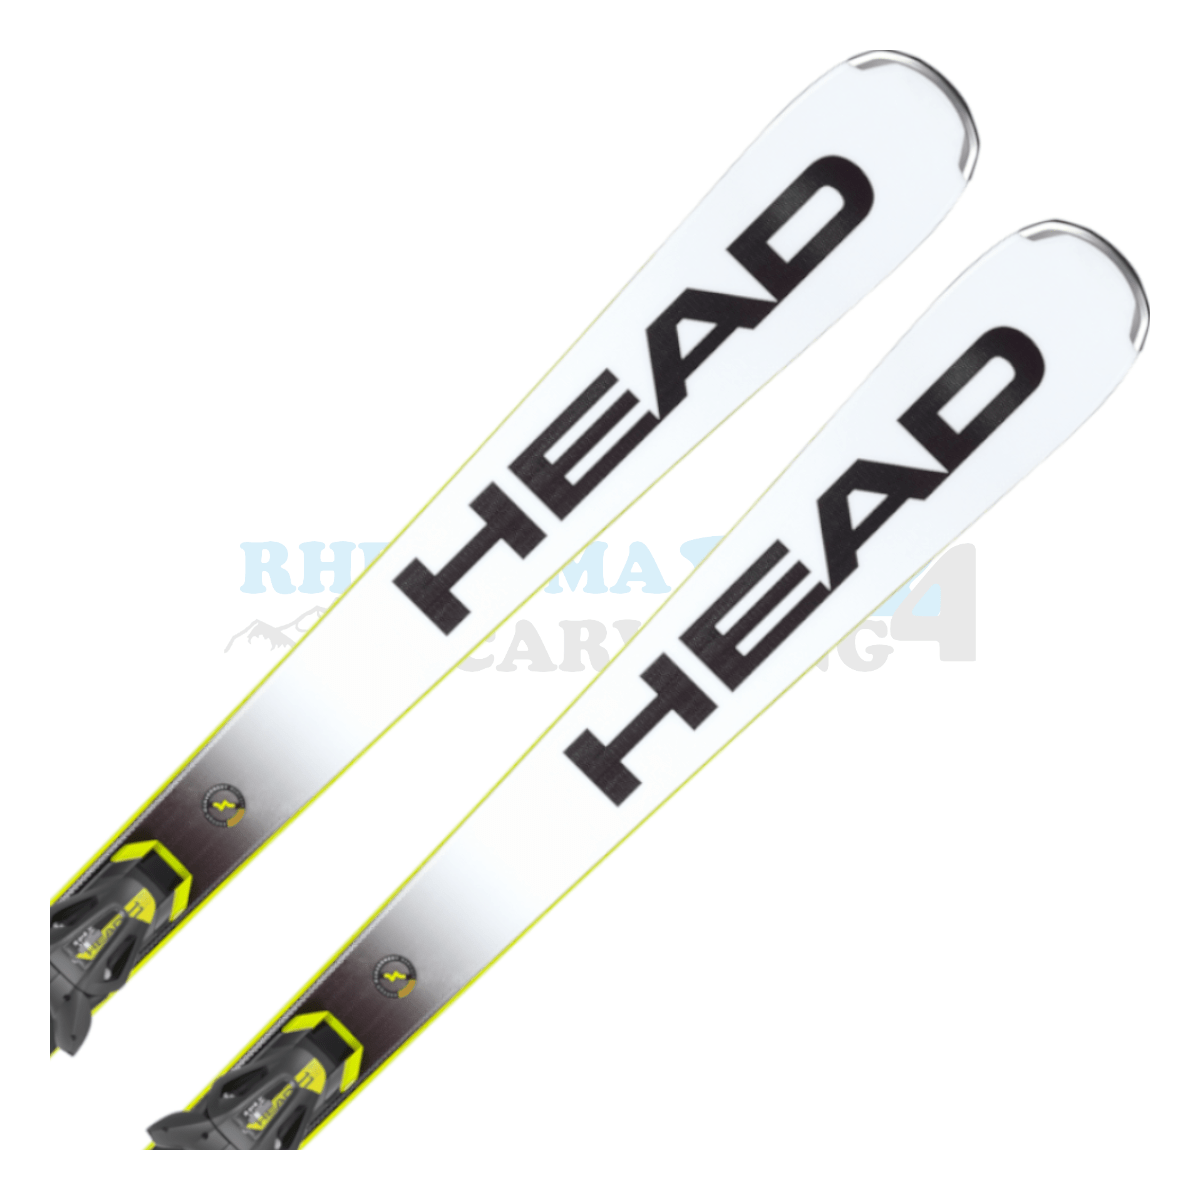 Head Rebels-eXSR mit Platte und Bindung, der Ski ist in der Farbe weiß-schwarz-gelb, die Ansicht des oberen Teils des Skis